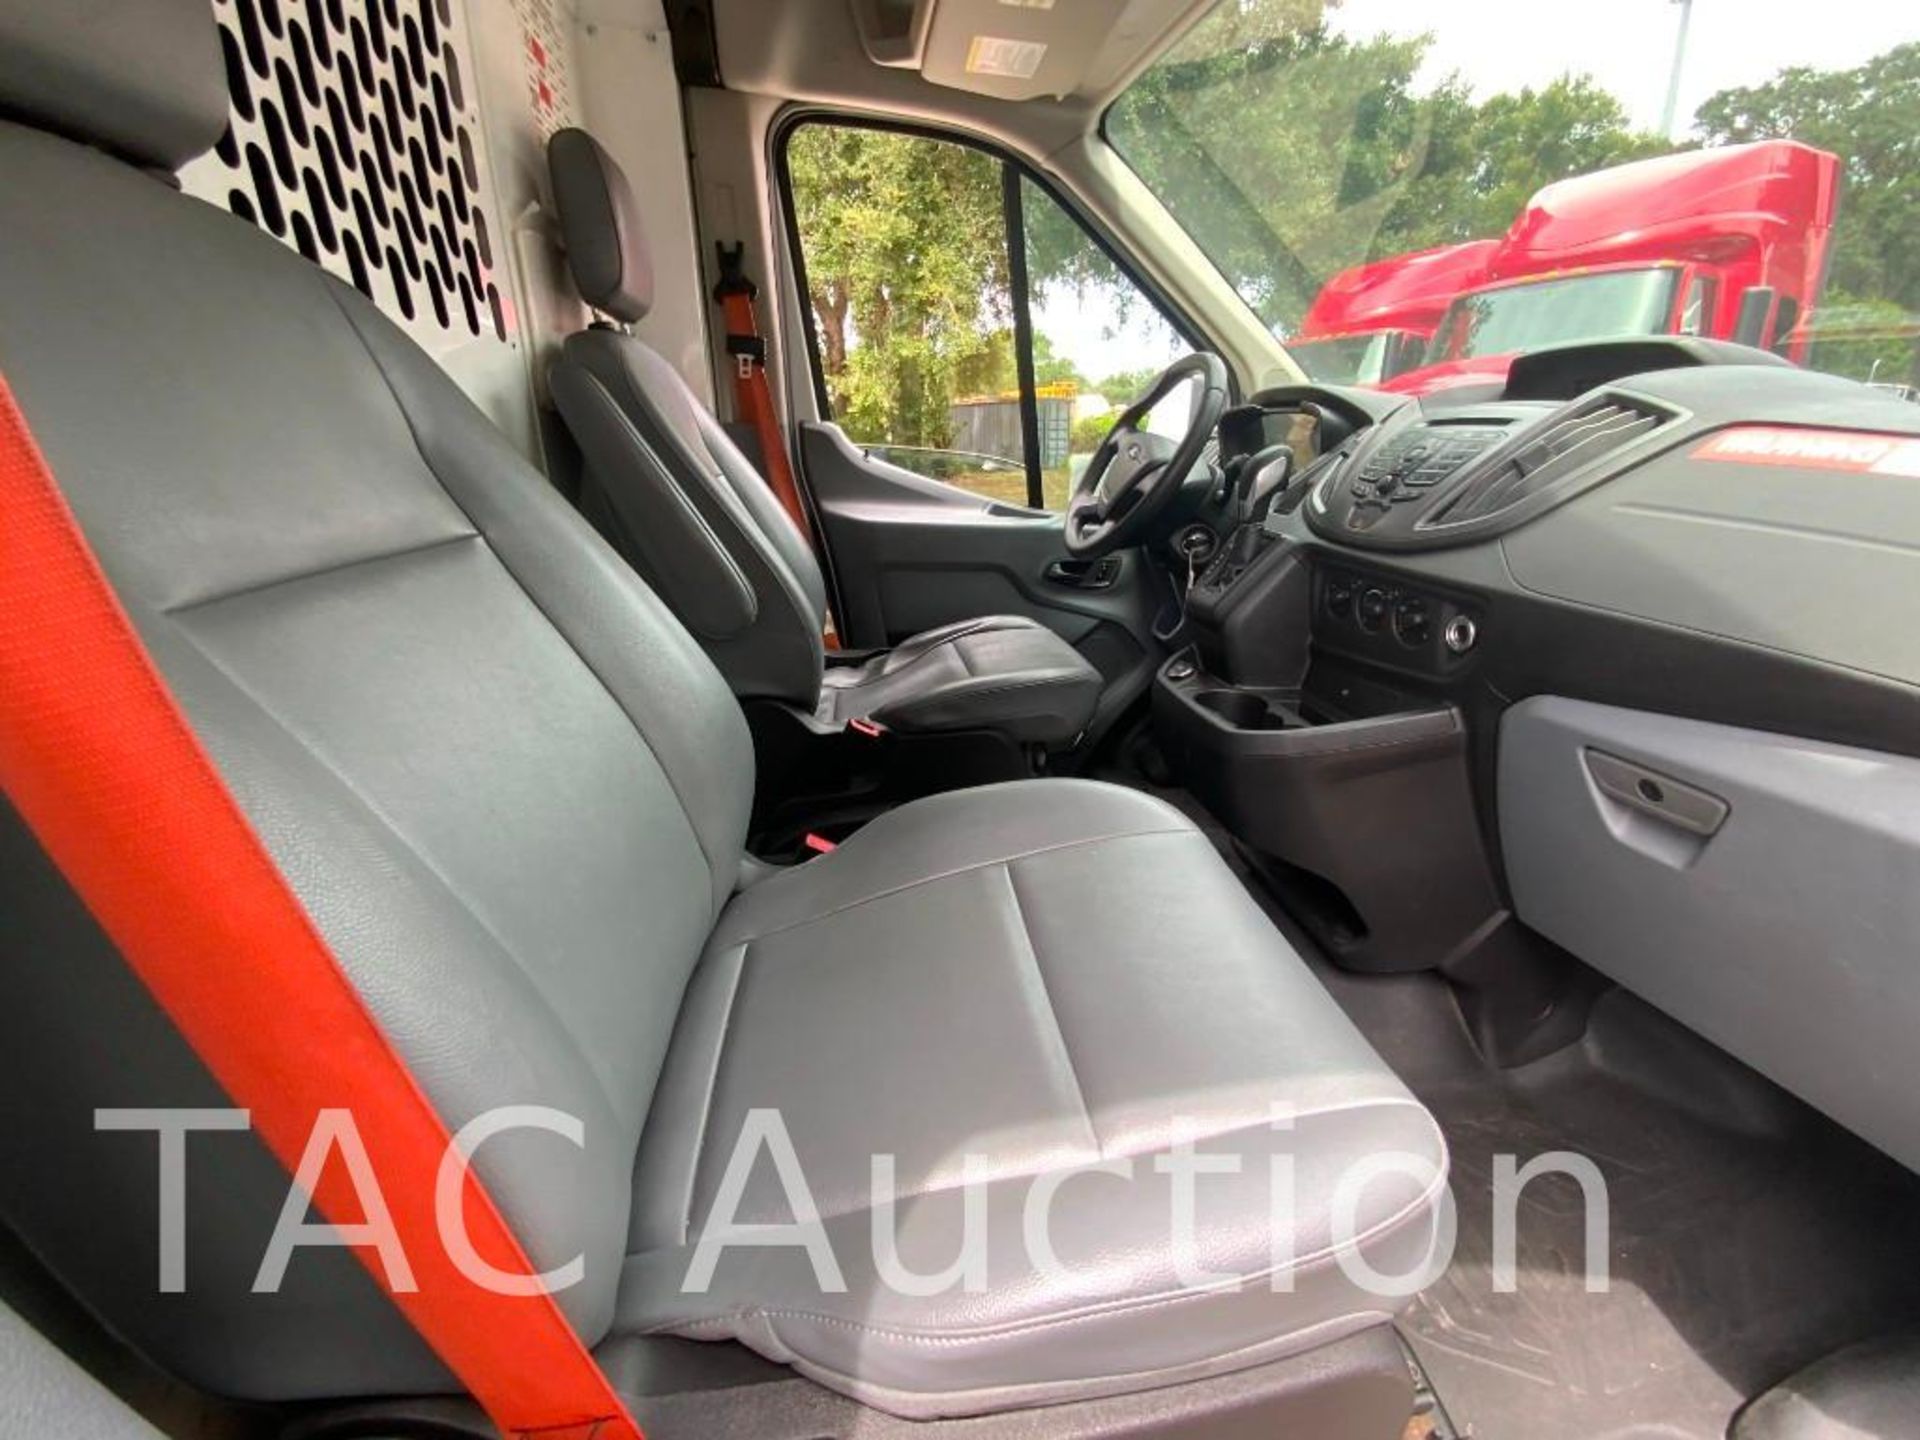 2019 Ford Transit 150 Cargo Van - Image 16 of 54